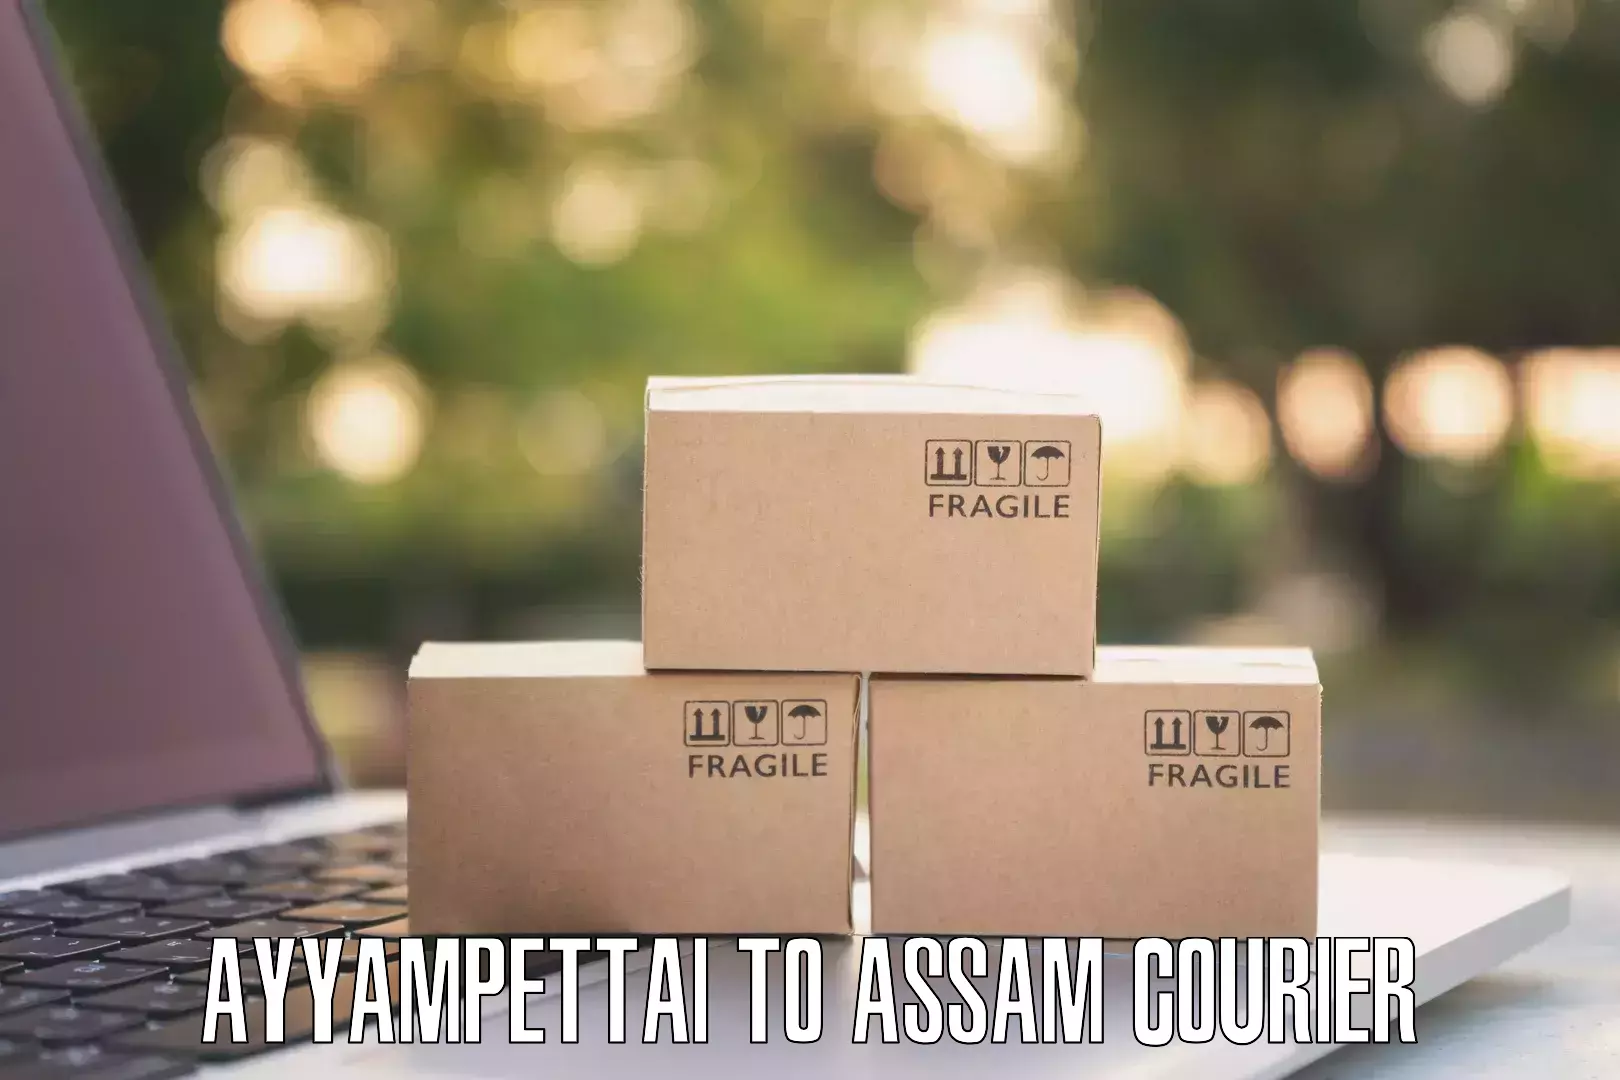 Quick dispatch service Ayyampettai to Assam